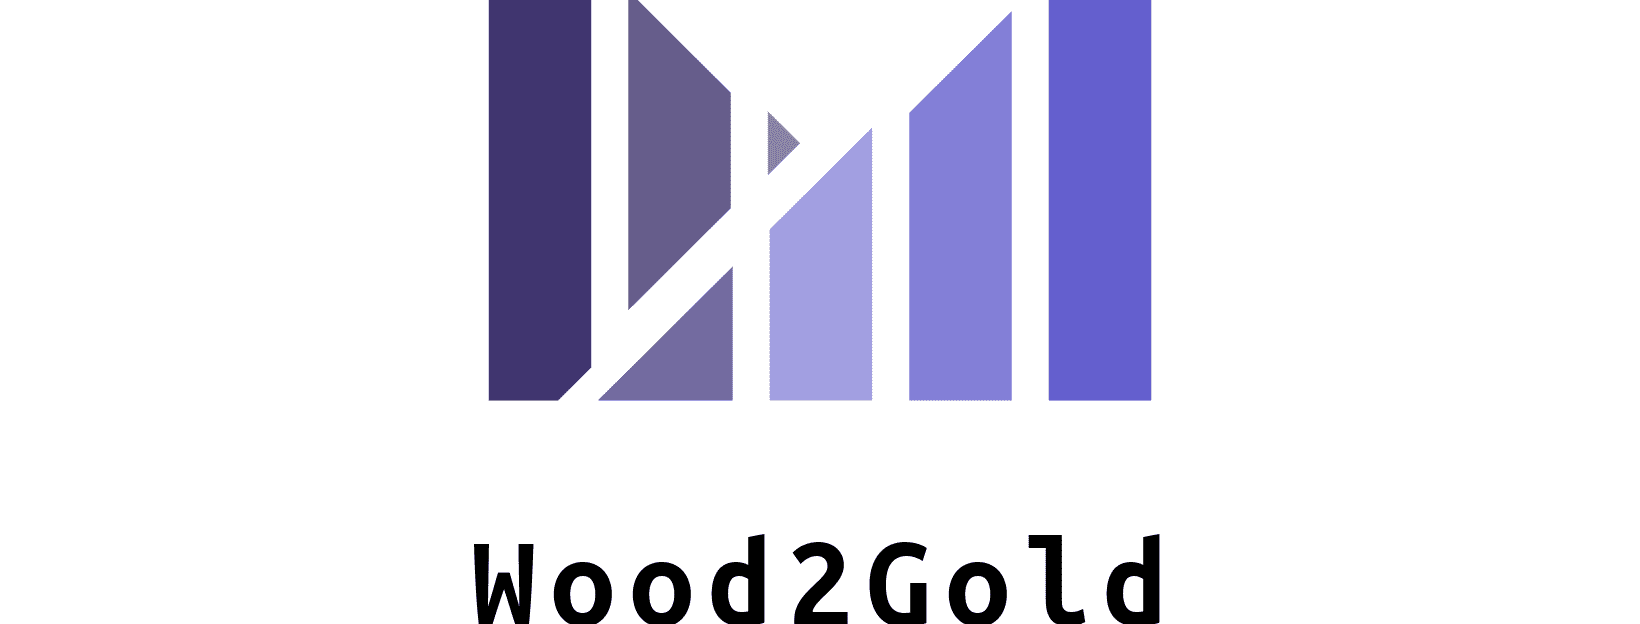 Wood2Gold